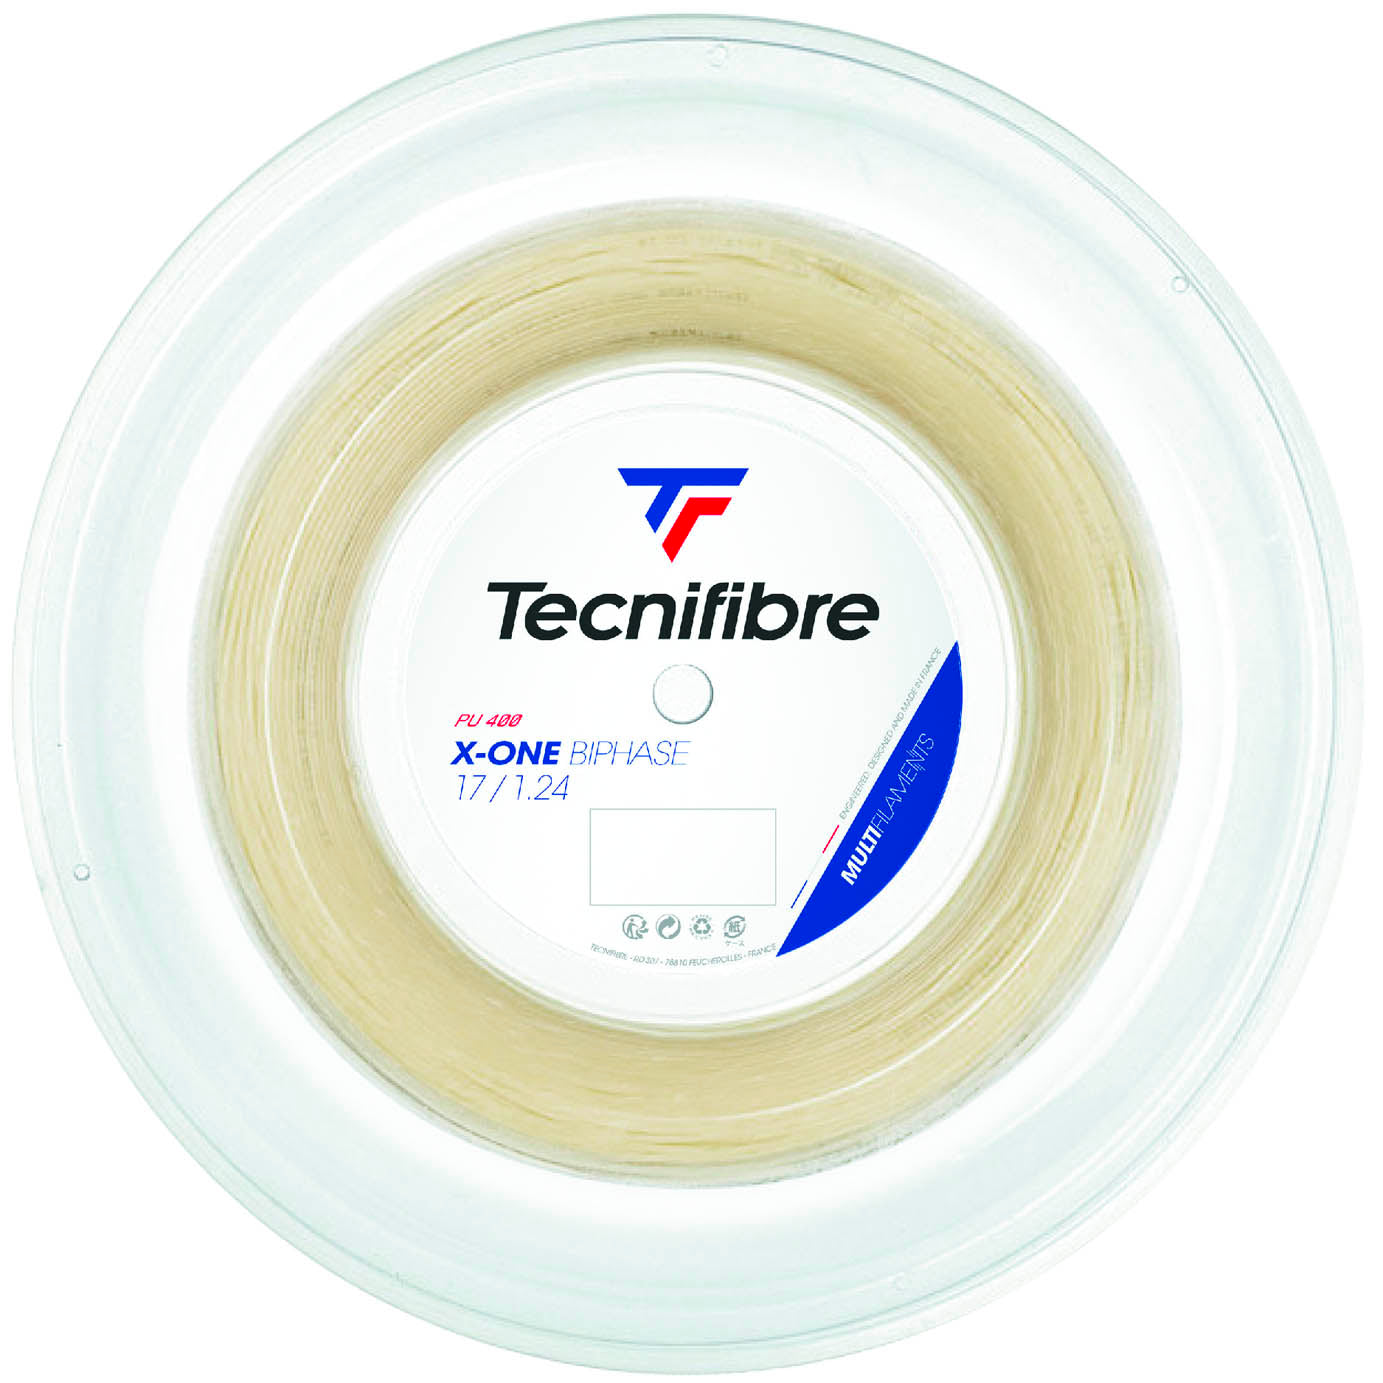 Tecnifibre X-One Biphase Tennis String - 200m Reel